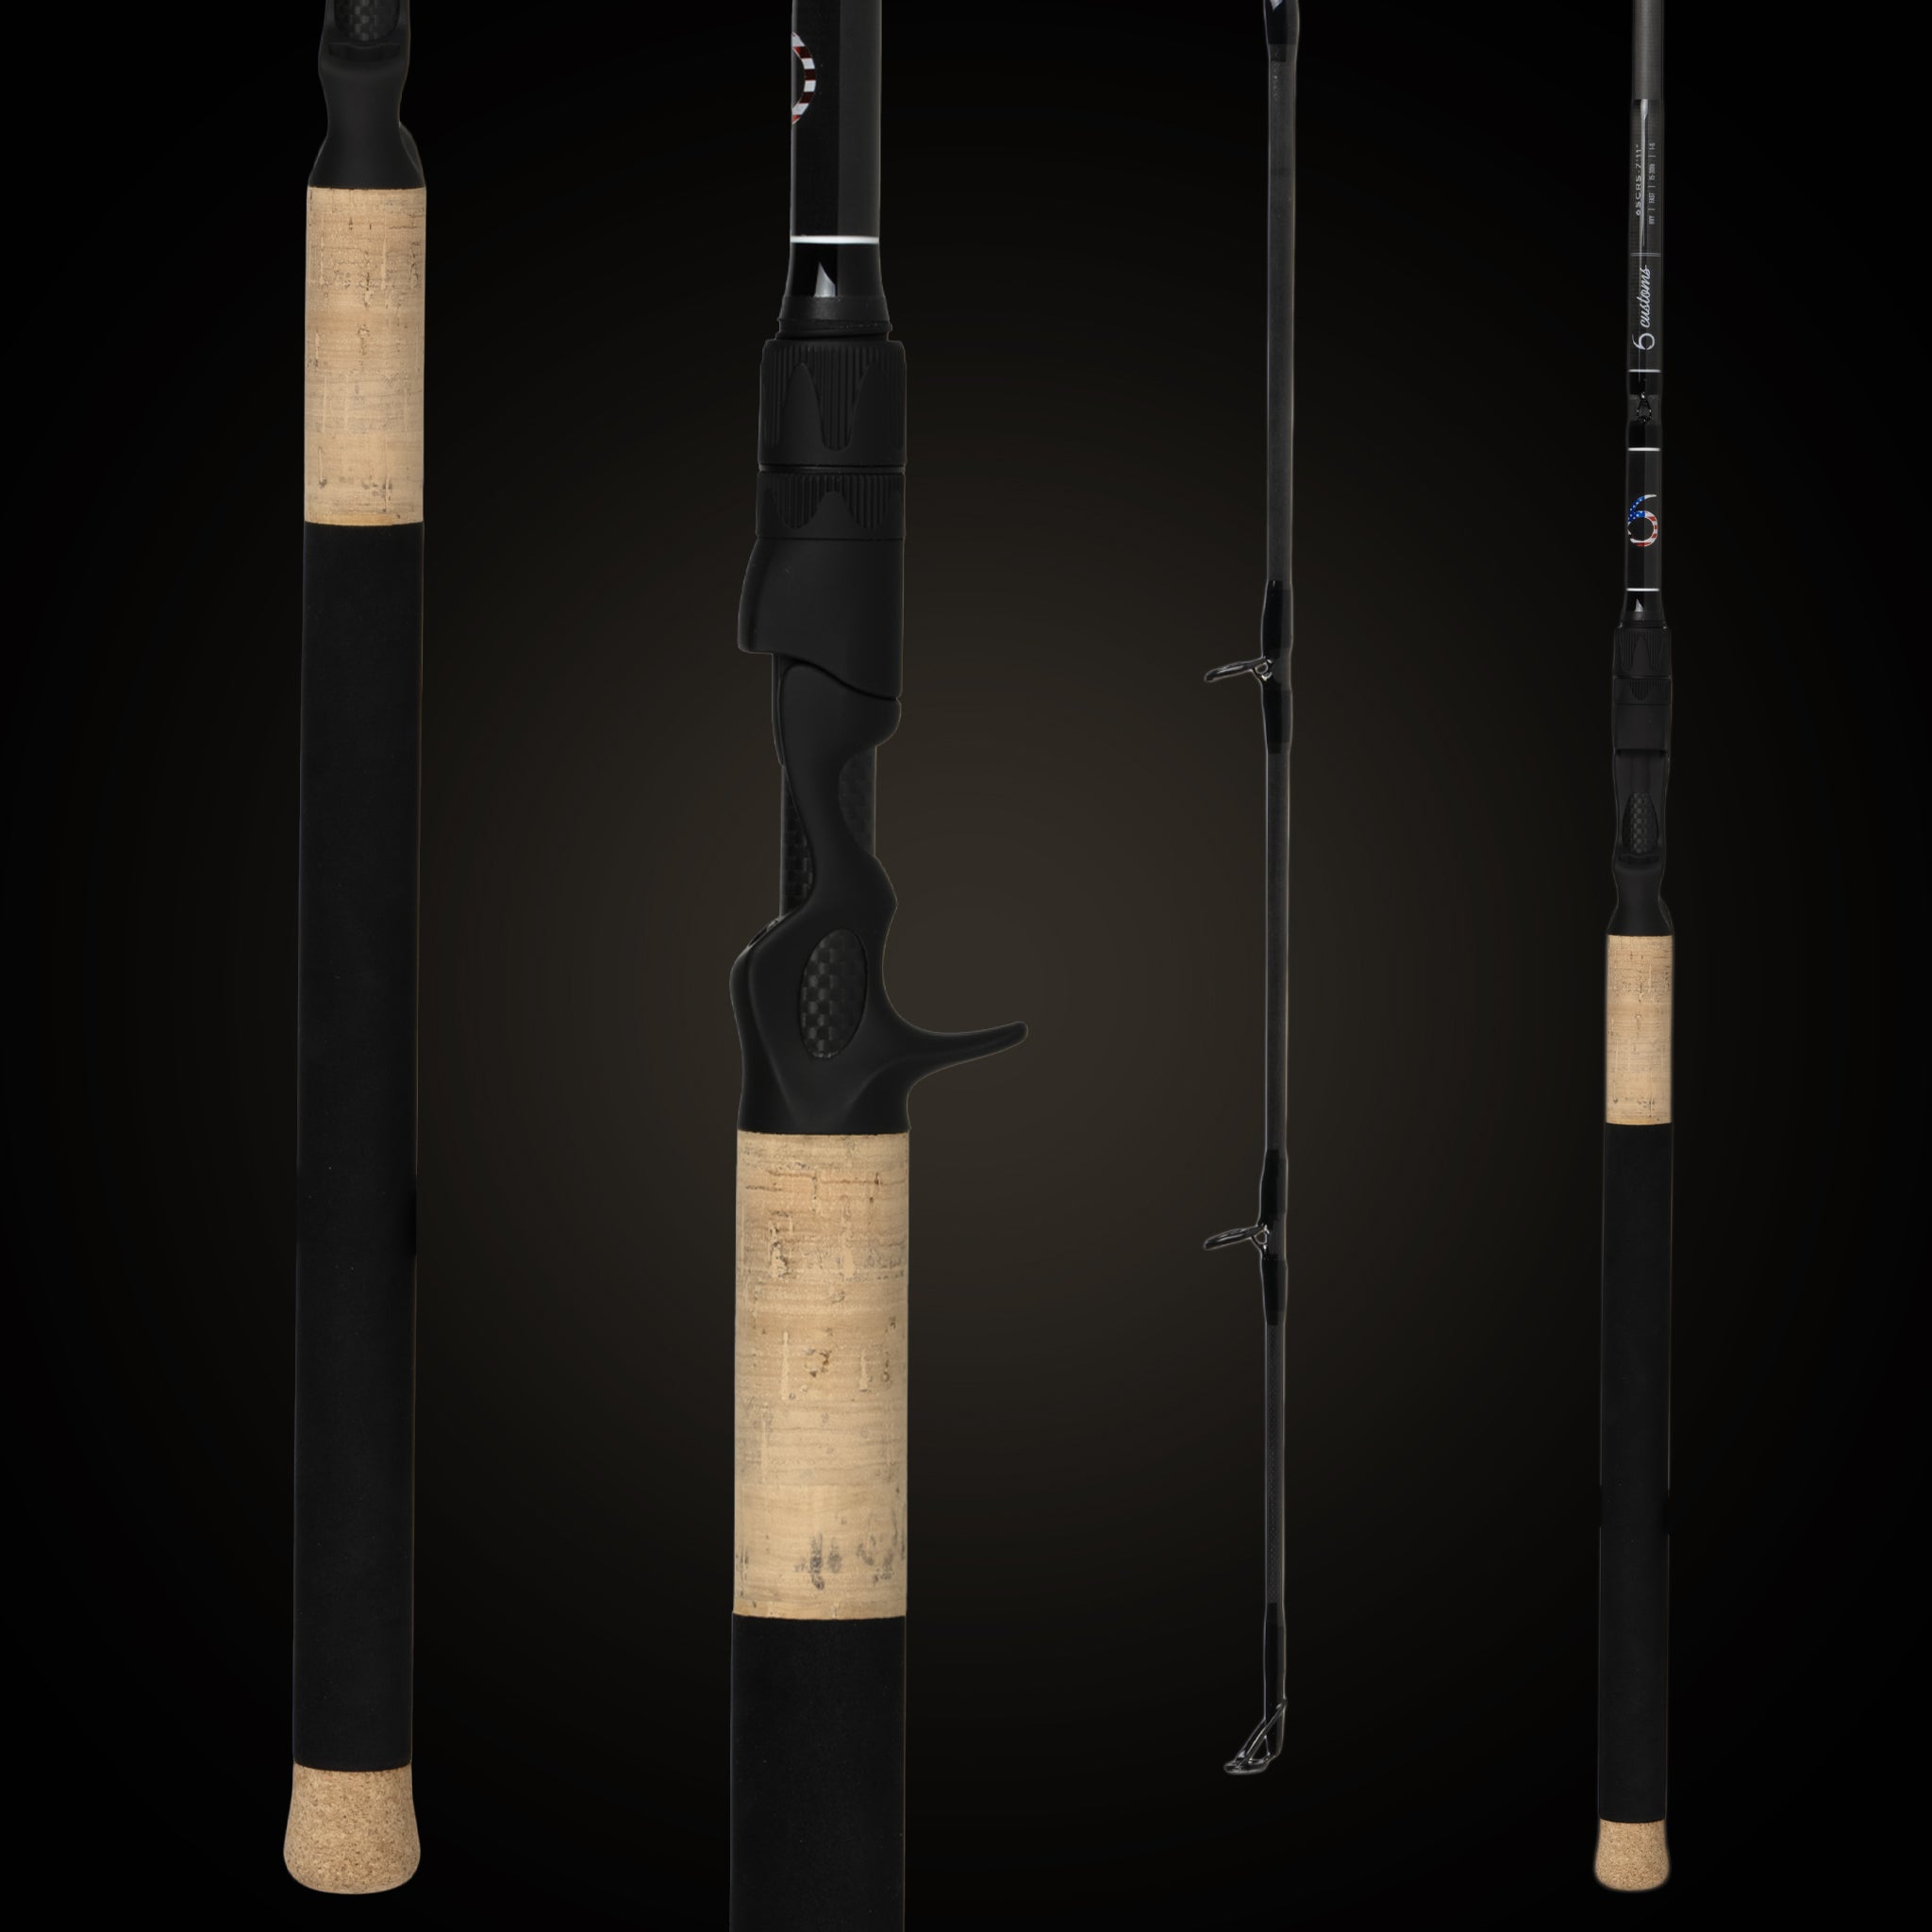 6th Sense Fishing - USA Series Casting Rod - 7'11 Mag Heavy, Fast